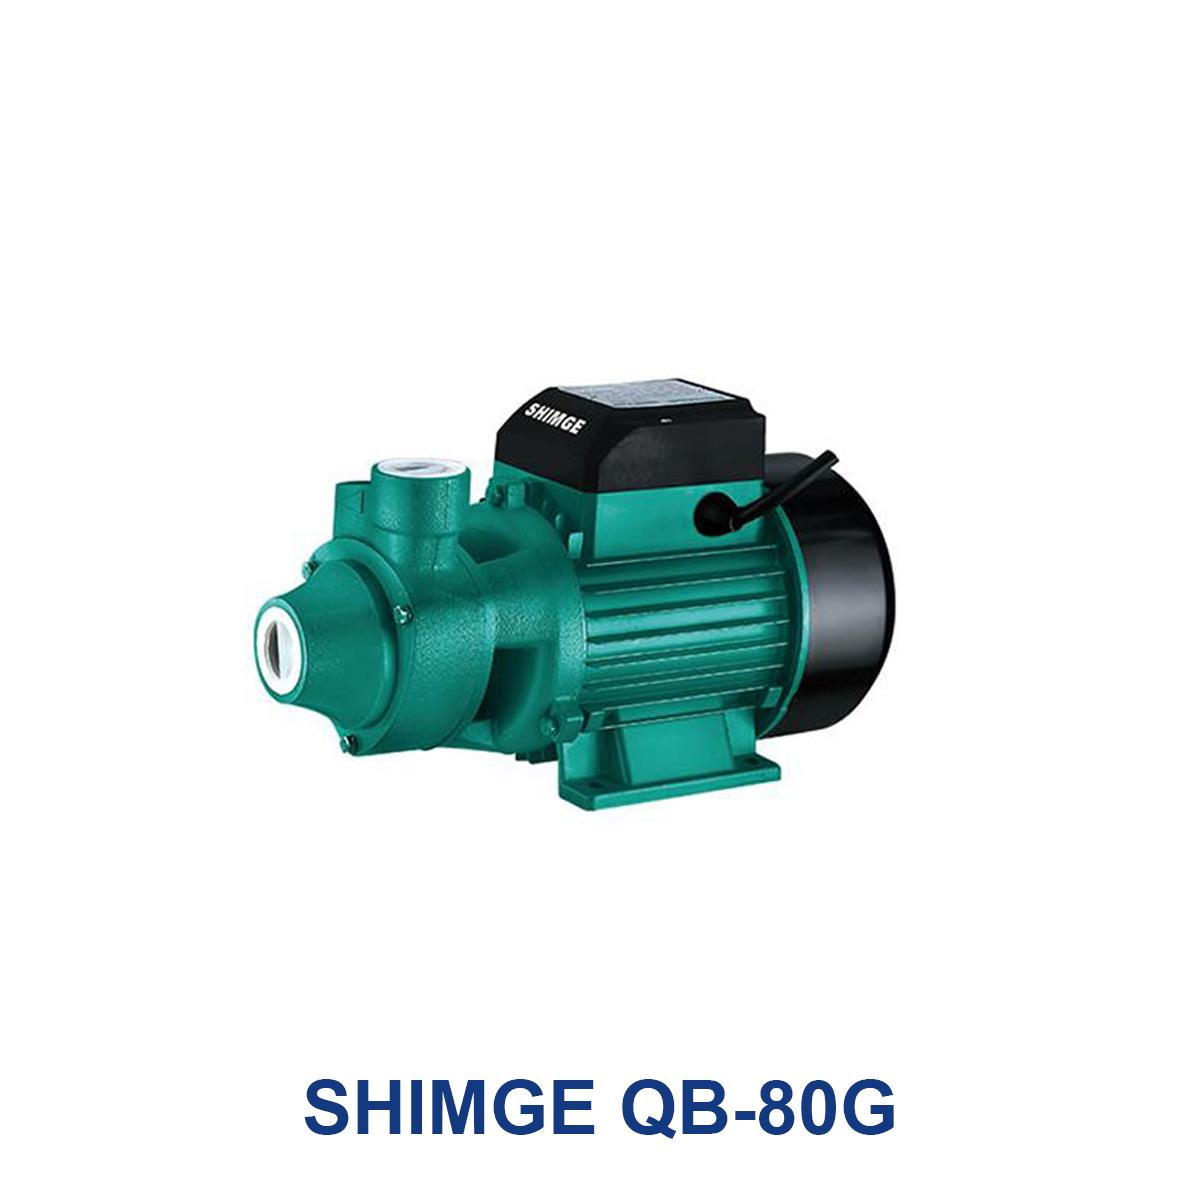 SHIMGE-QB-80G